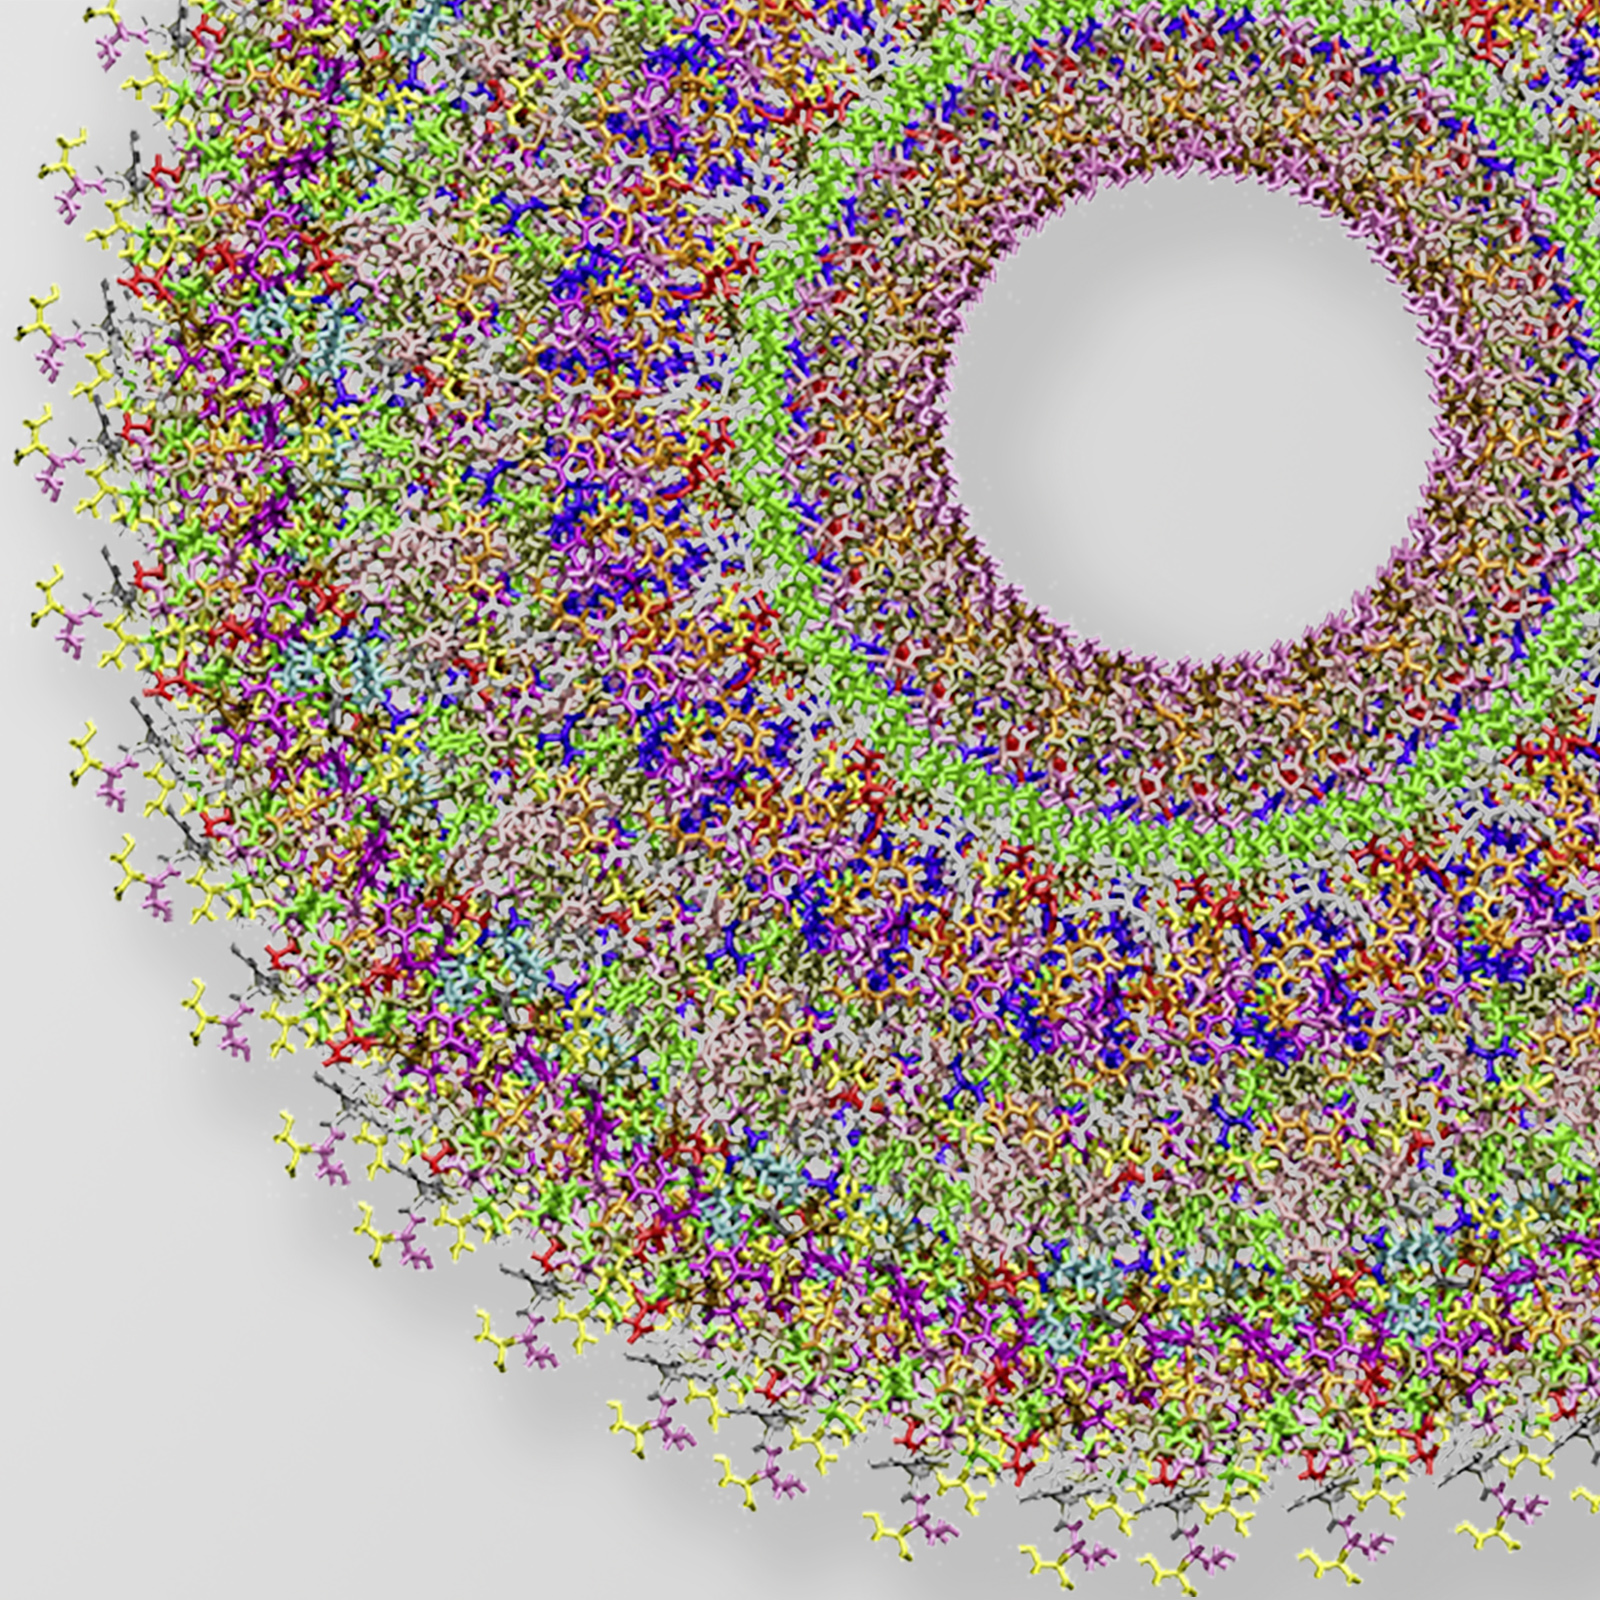 Auch winzige Objekte lassen sich detailiert abbilden: Hier das atomistische Modell des Tabakmosaikvirus. Das röhrenförmige Virus ist ca. 300 nm lang und 18 nm im Durchmesser.